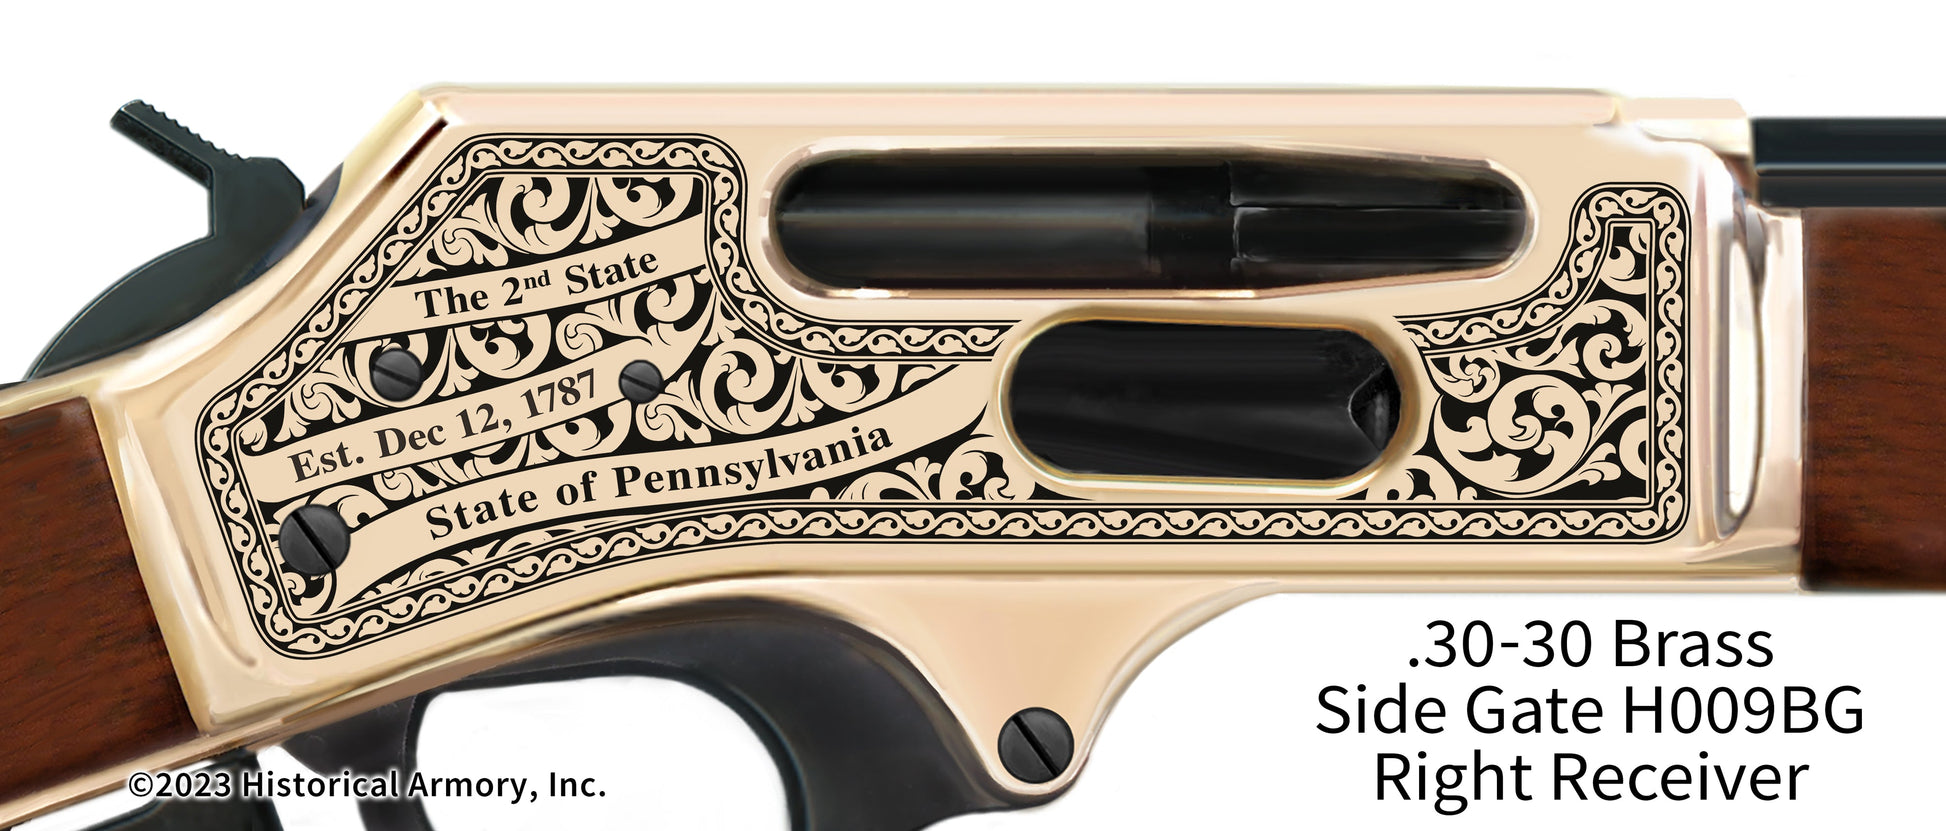 Mercer County Pennsylvania Engraved Henry .30-30 Brass Side Gate Rifle